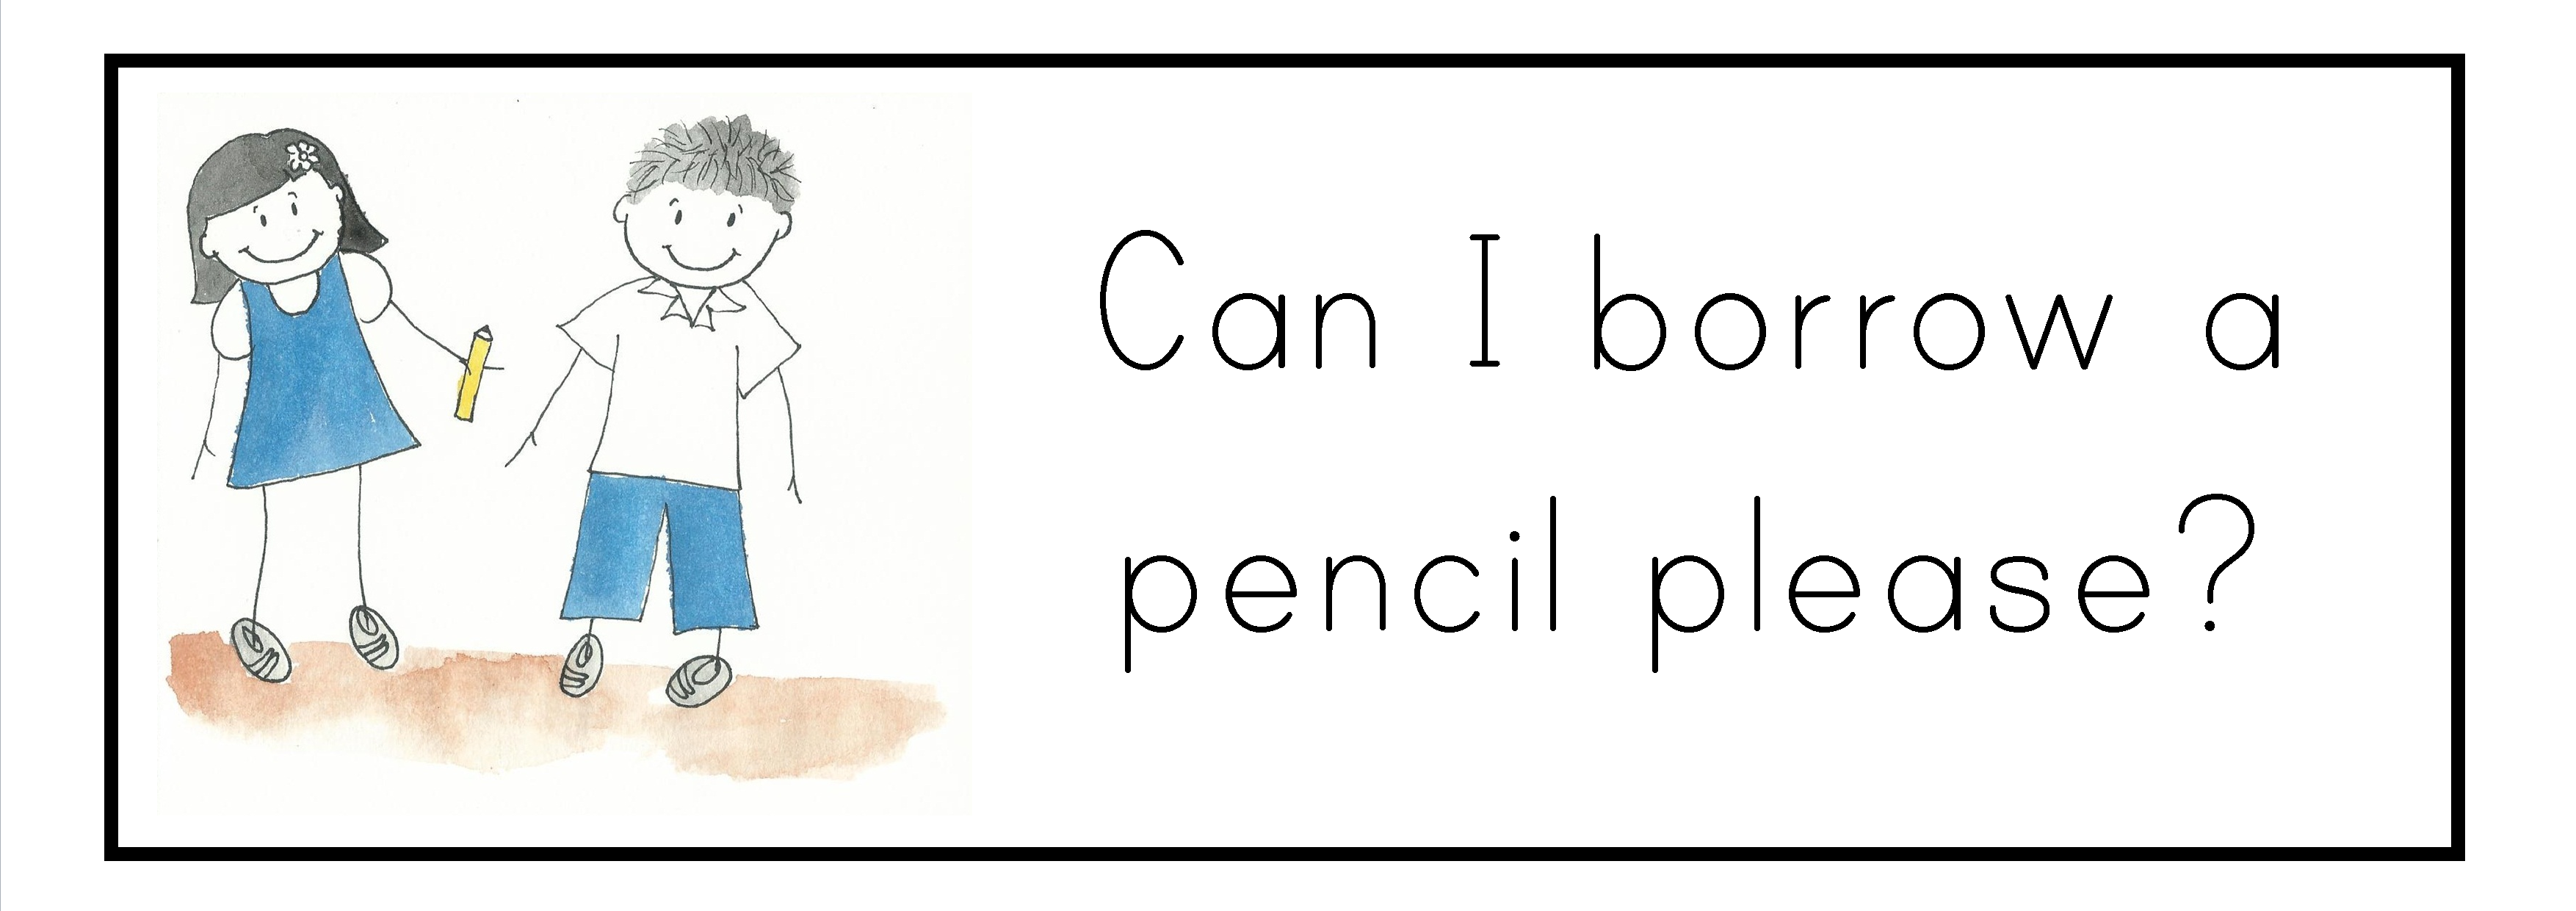 May I Borrow Your Pencil Please Clip Art Library 